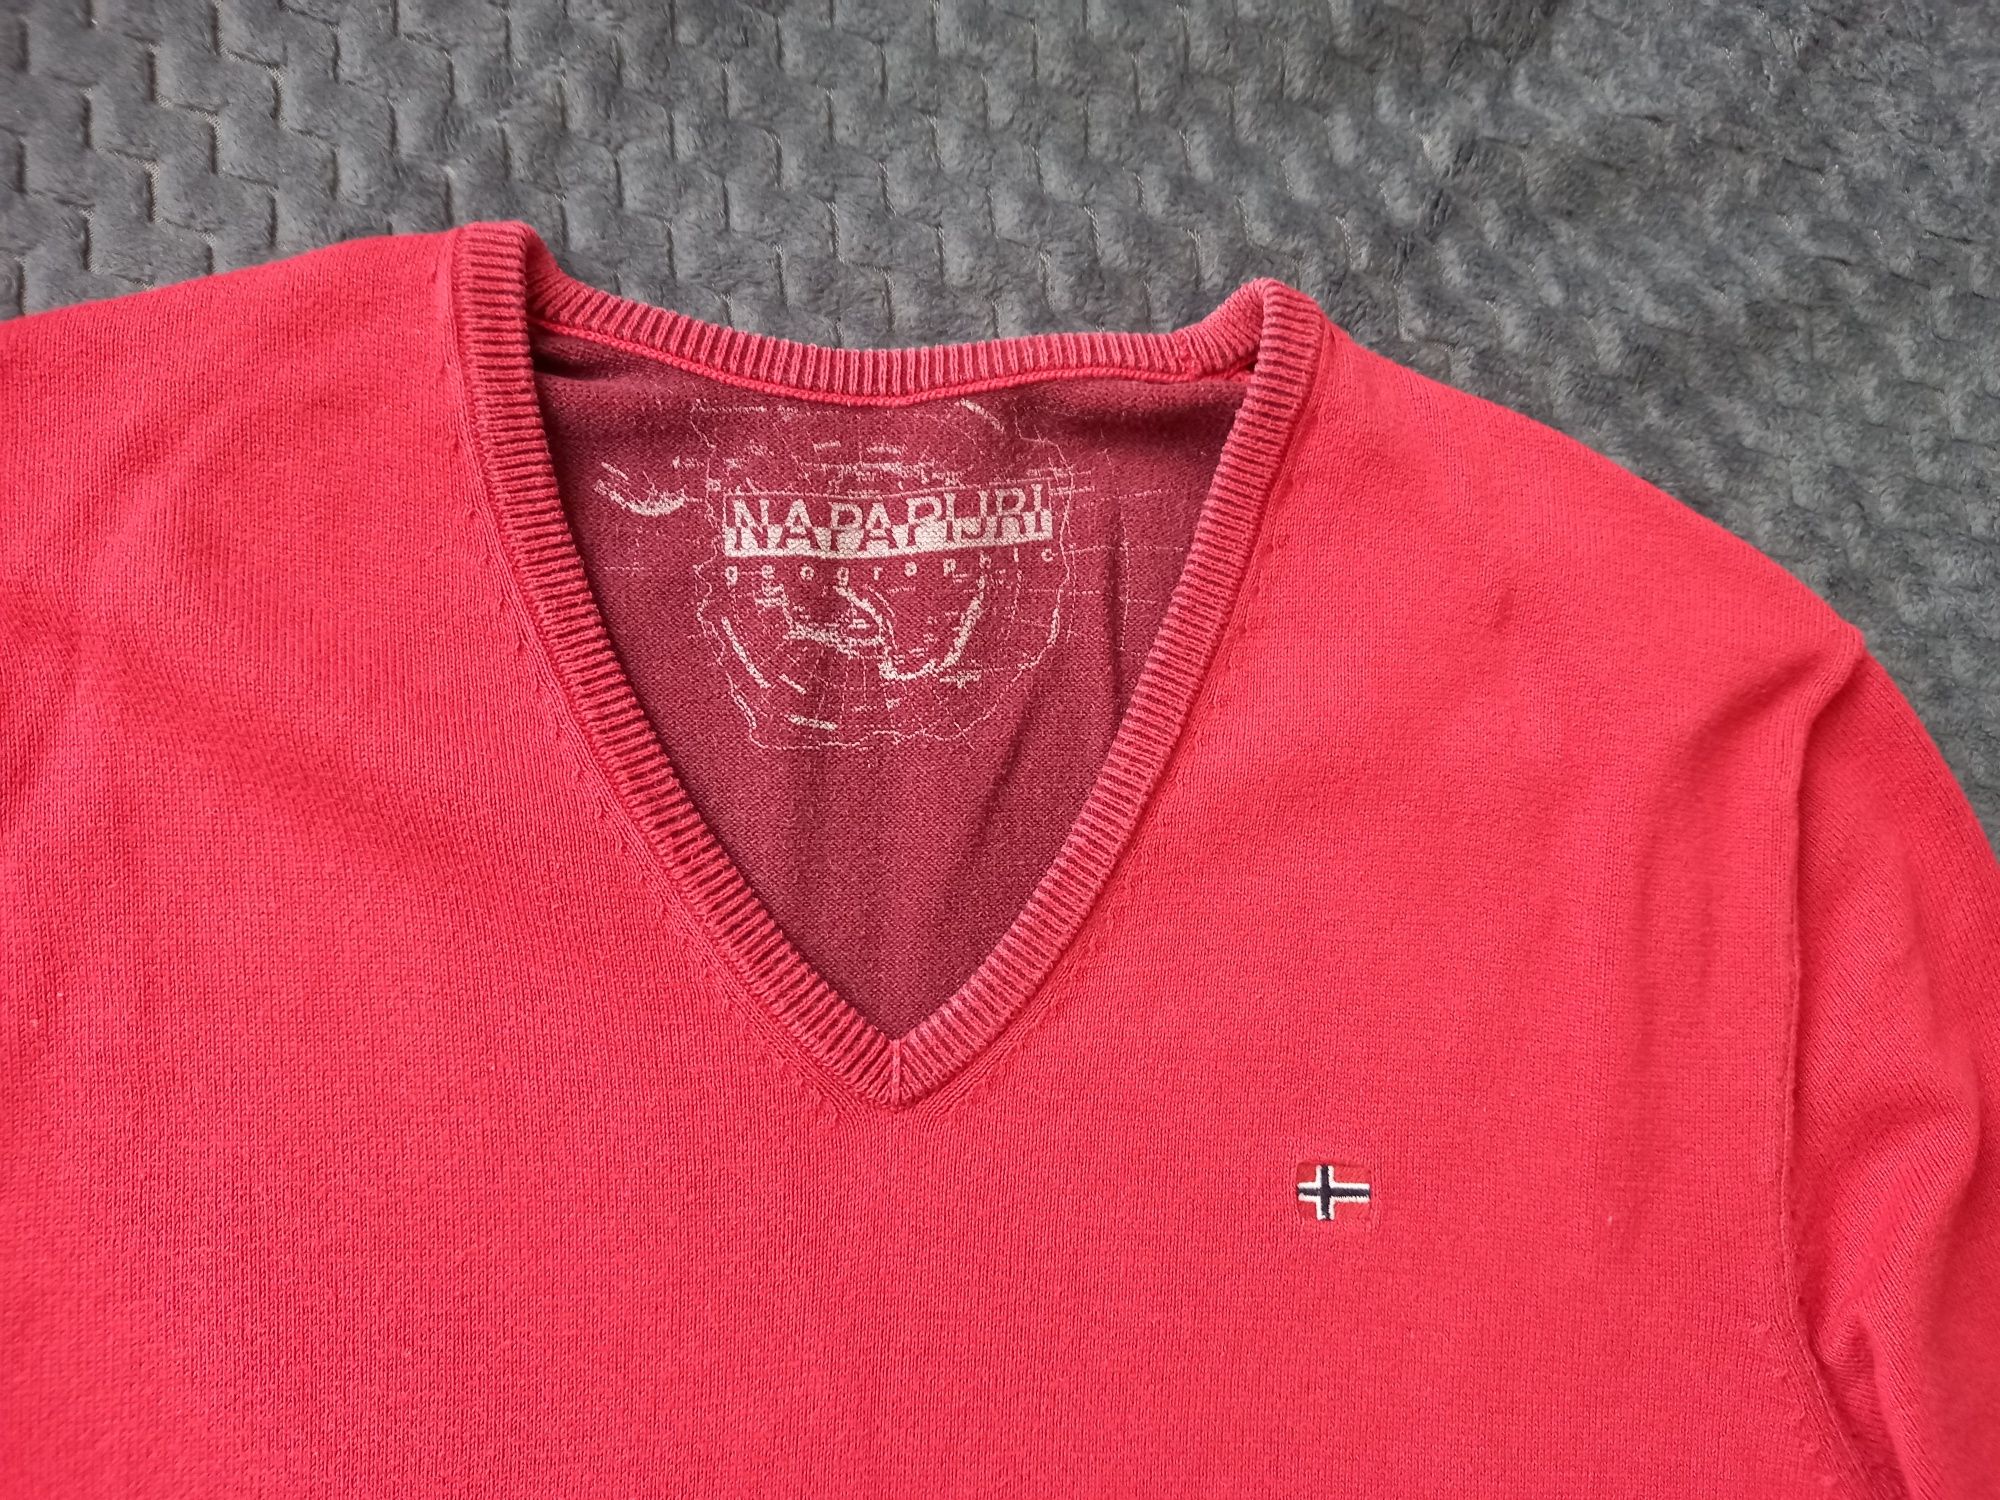 Реглан, джемпер, пуловер Napapijri (кофта)